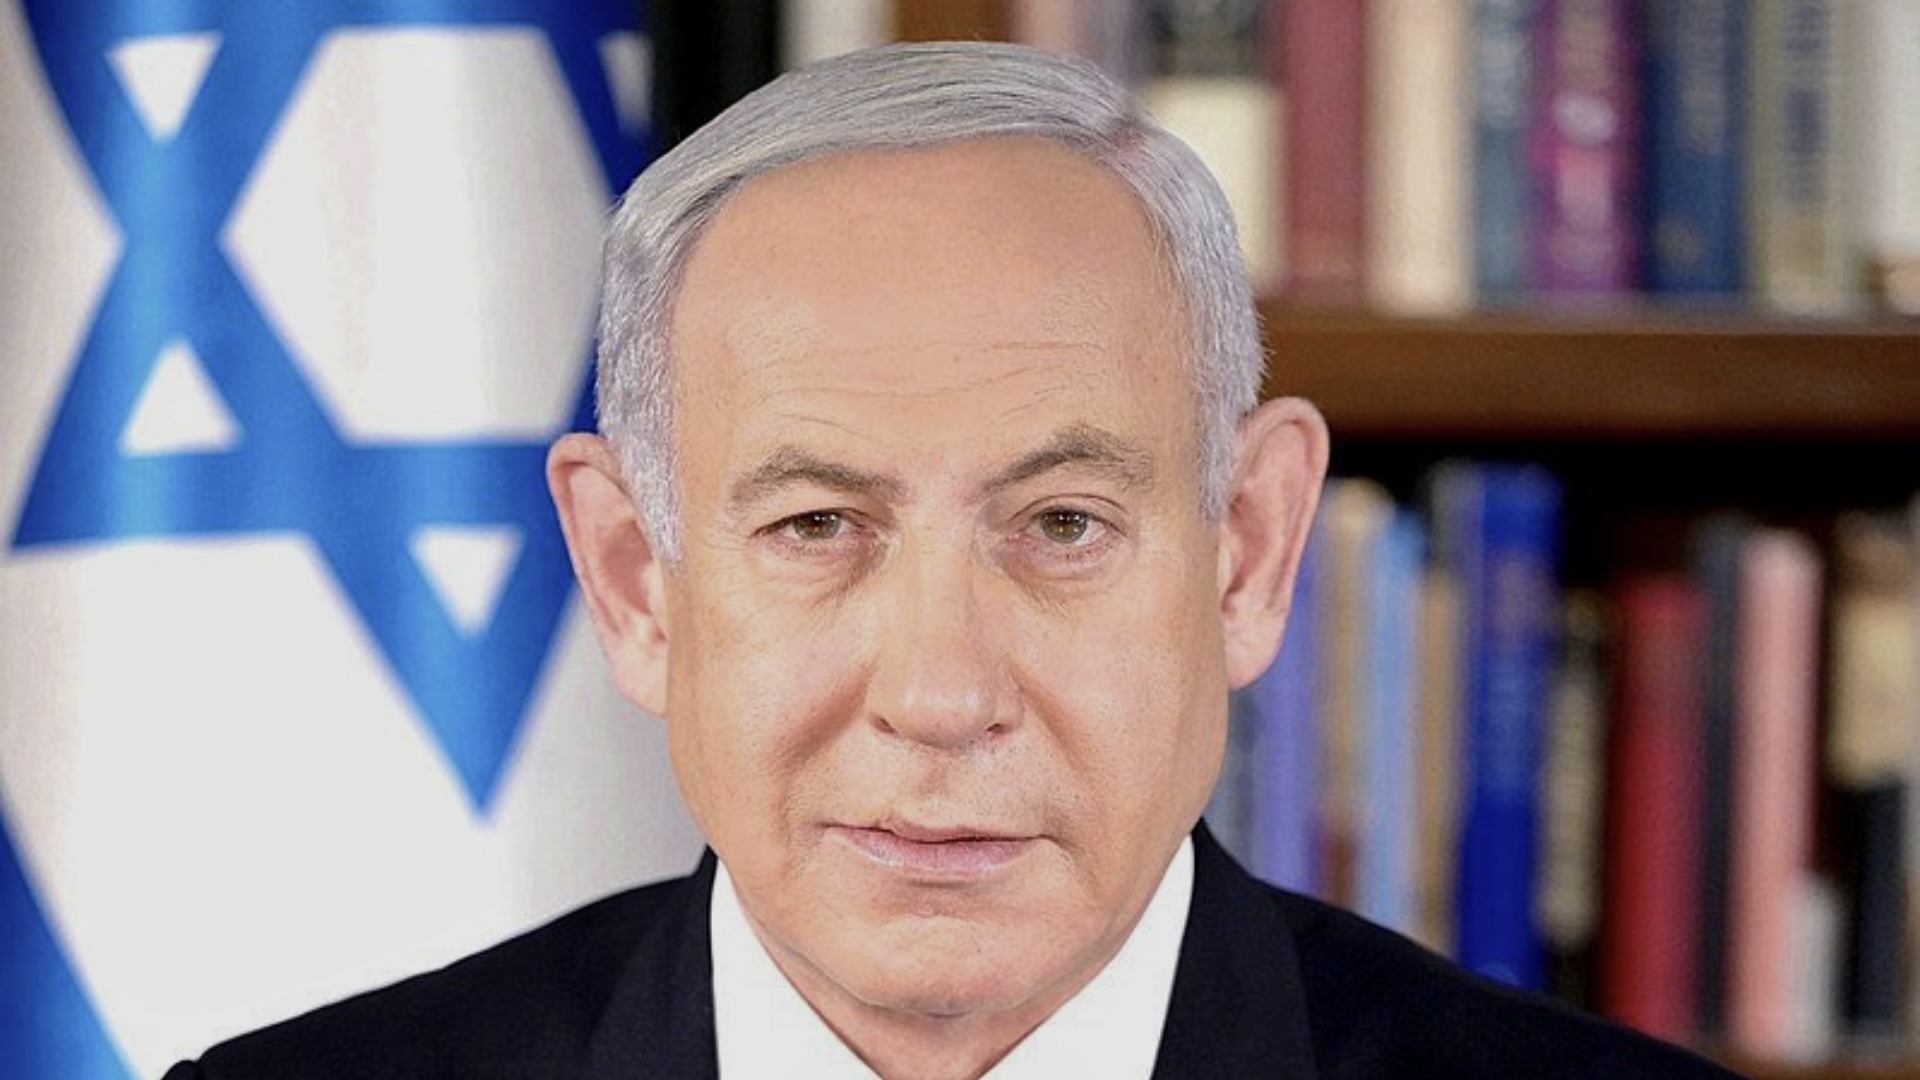 Mandato di arresto per Netanyahu: si parla di antisemitismo, ma Bibi non è Israele